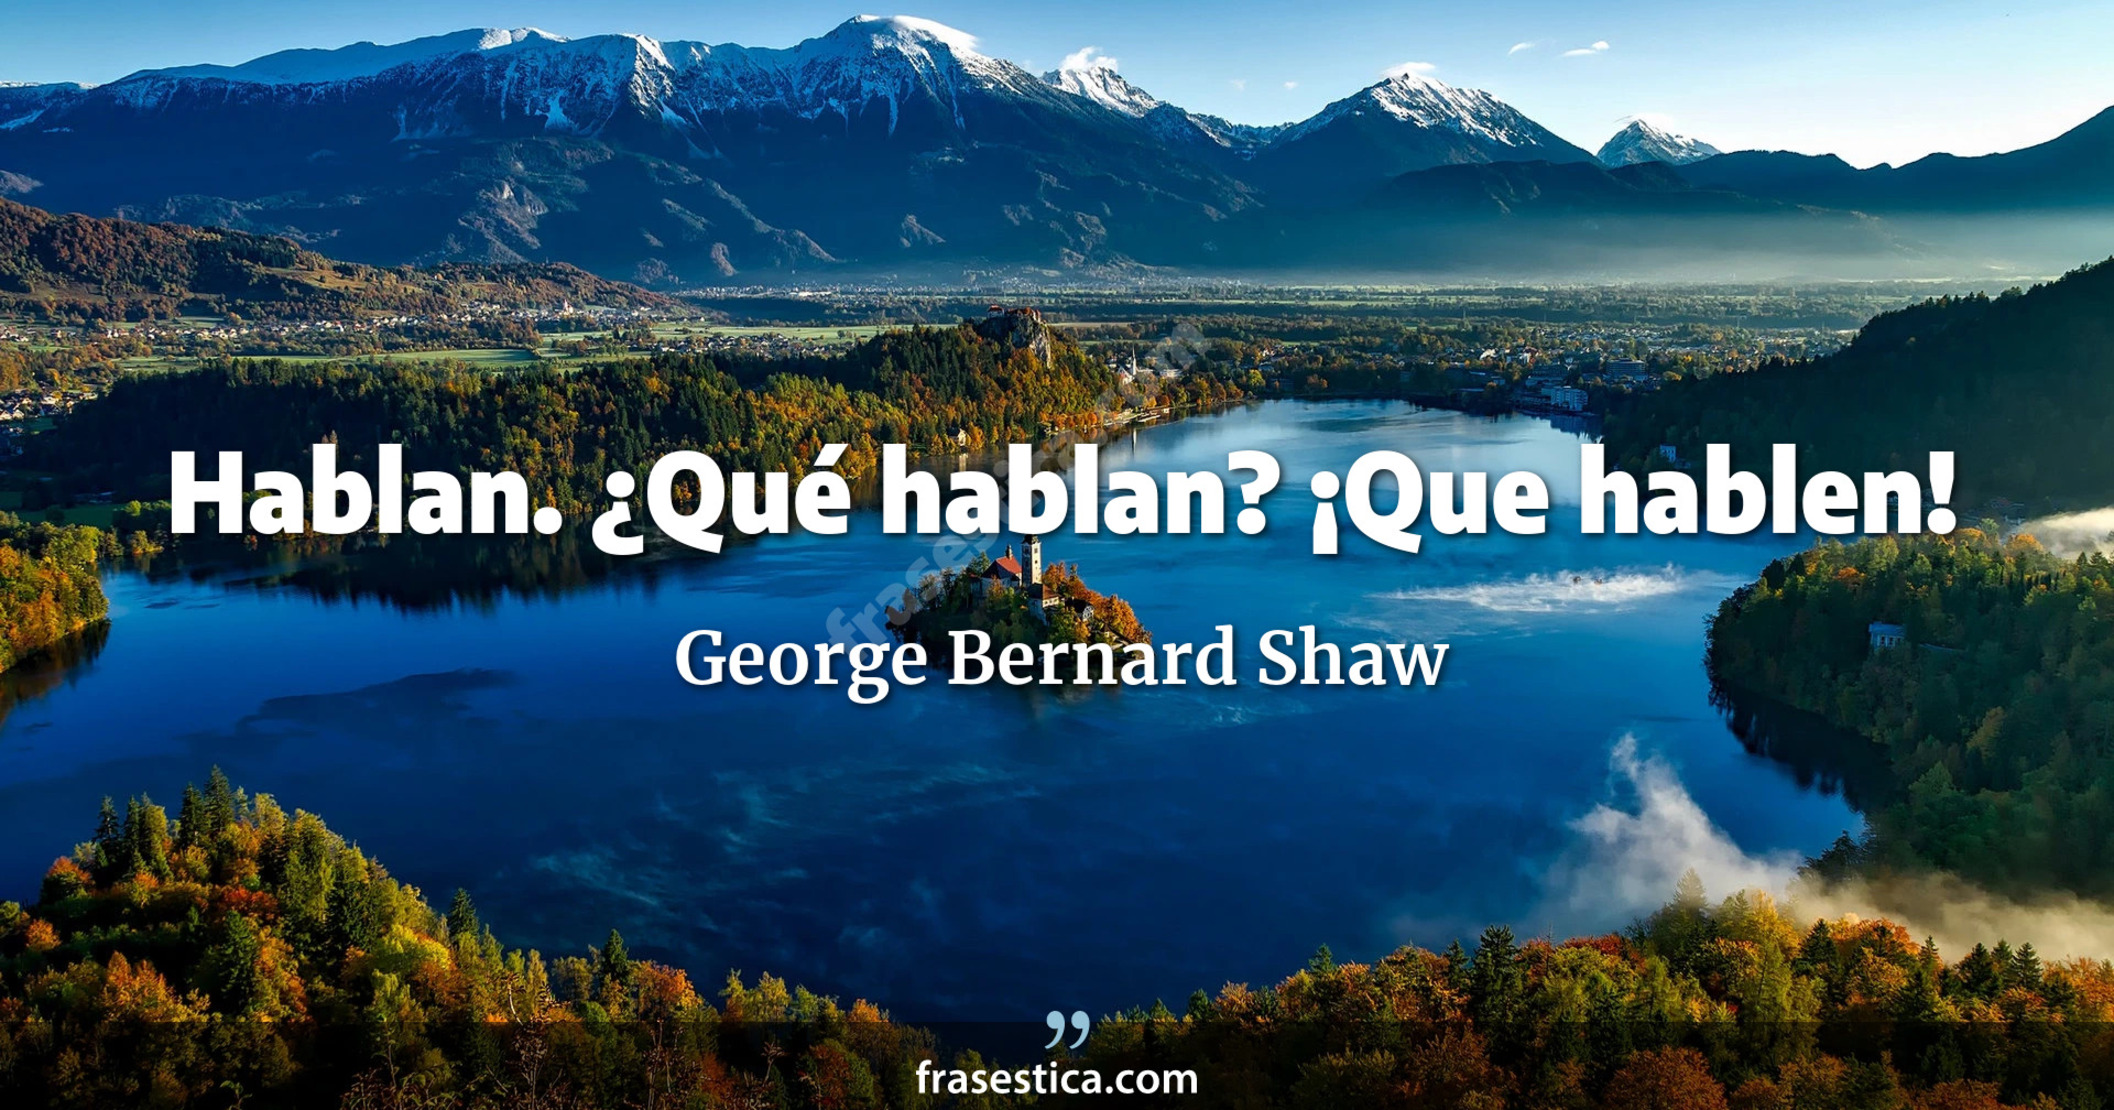 Hablan. ¿Qué hablan? ¡Que hablen! - George Bernard Shaw